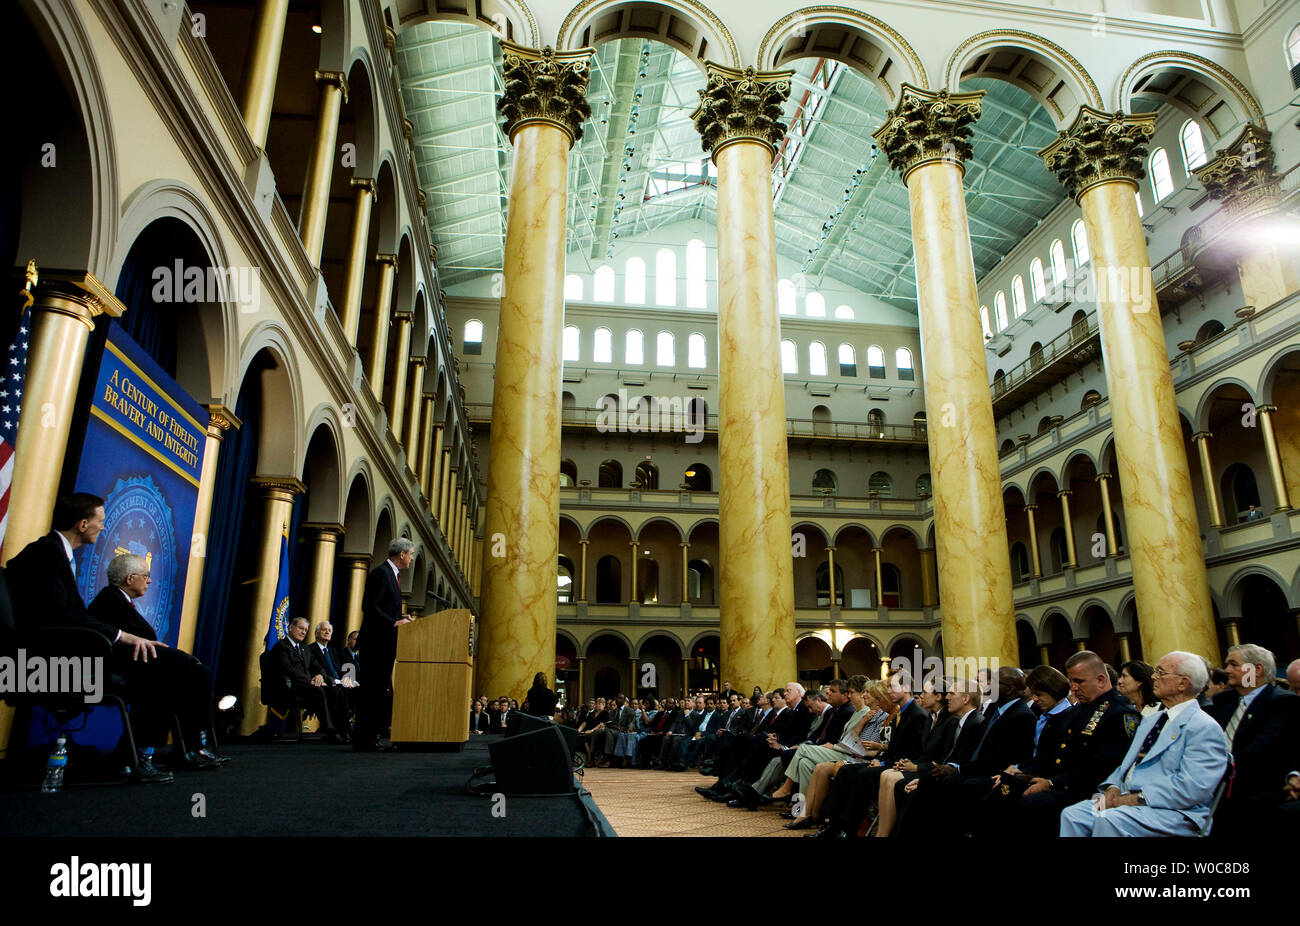 Directeur du FBI Robert Mueller III prend la parole lors d'un événement au Musée national du bâtiment pour commémorer le Federal Bureau of Investigation son 100e anniversaire à Washington le 17 juillet 2008. (Photo d'UPI/Patrick D. McDermott) Banque D'Images